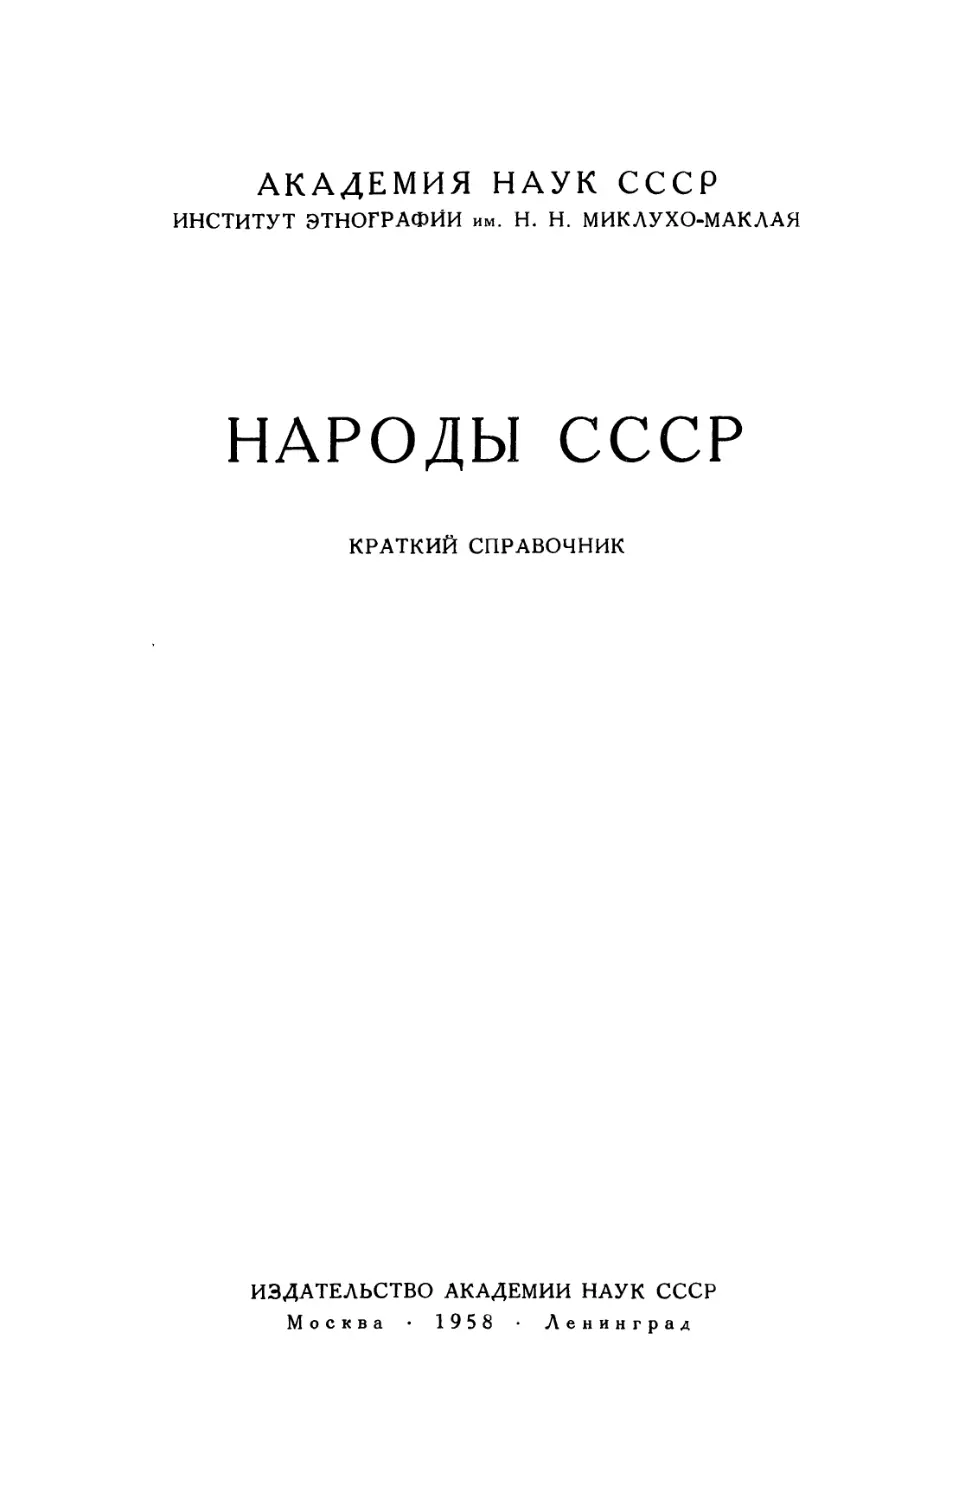 Народы СССР. Краткий справочник - 1958